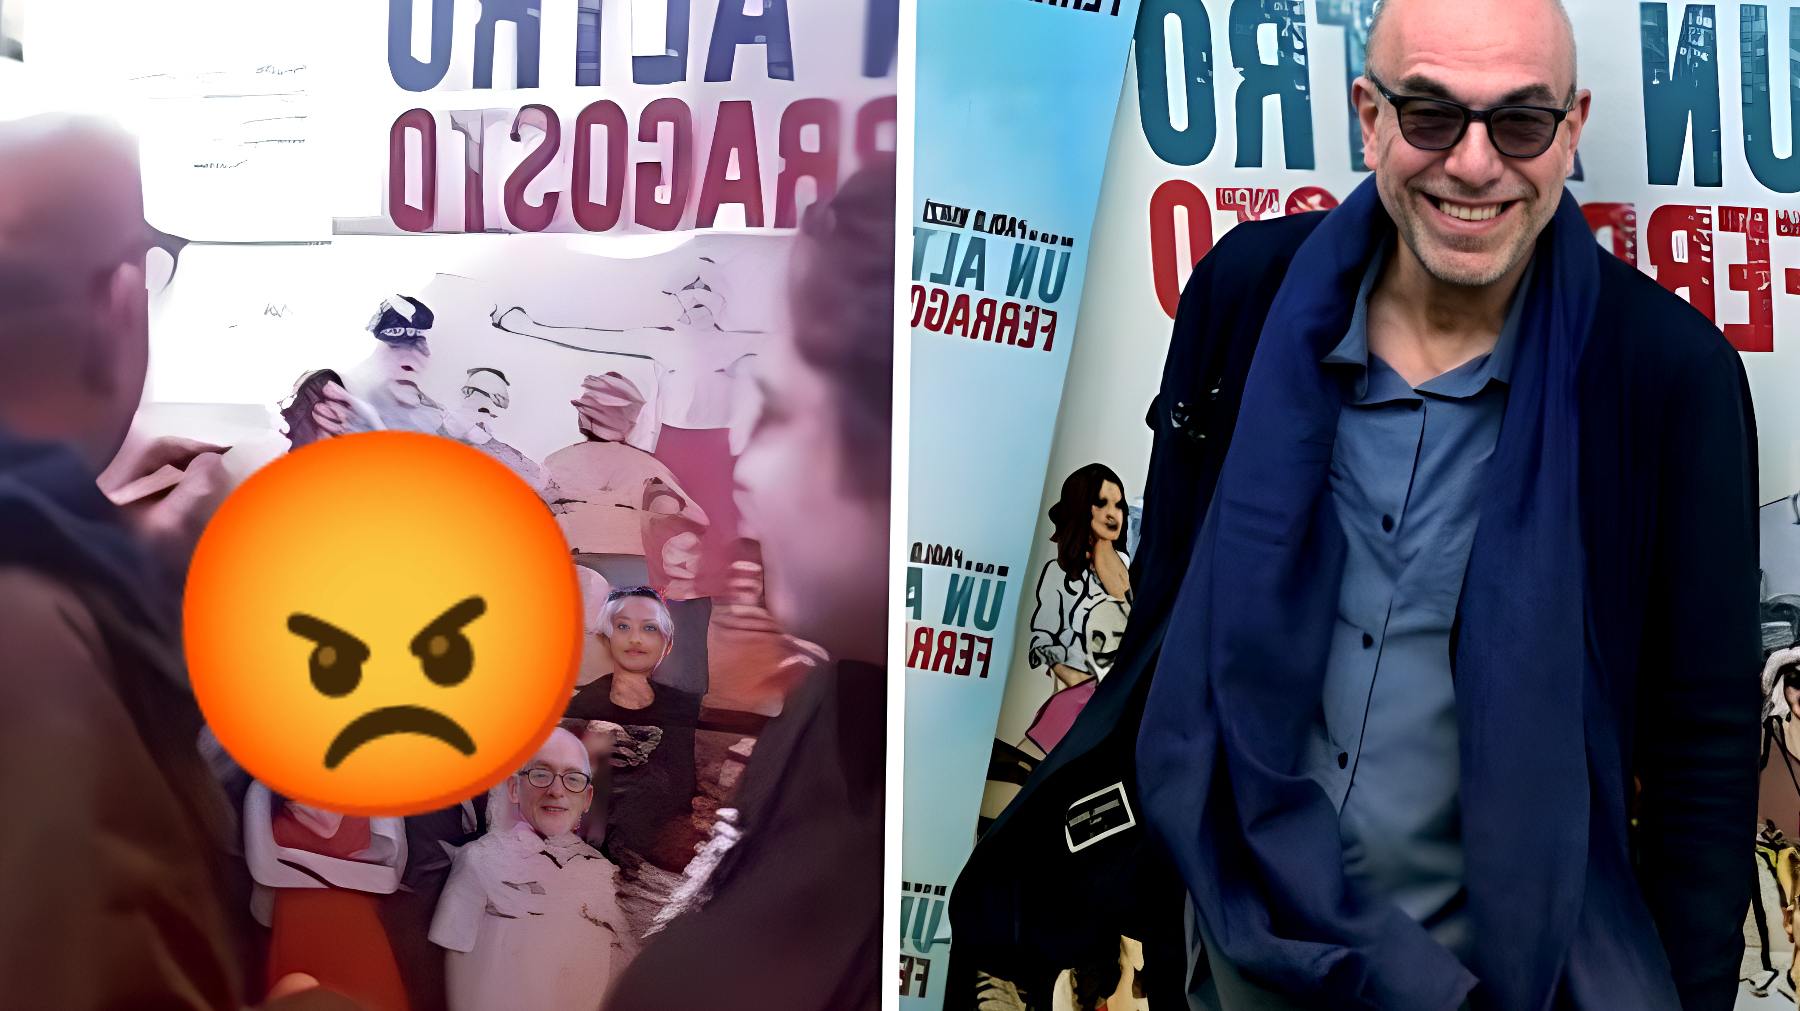 Paolo Virzì abbandona la sala durante il proprio film: "Proiezione pessima!" Il proprietario reagisce con una minaccia legale